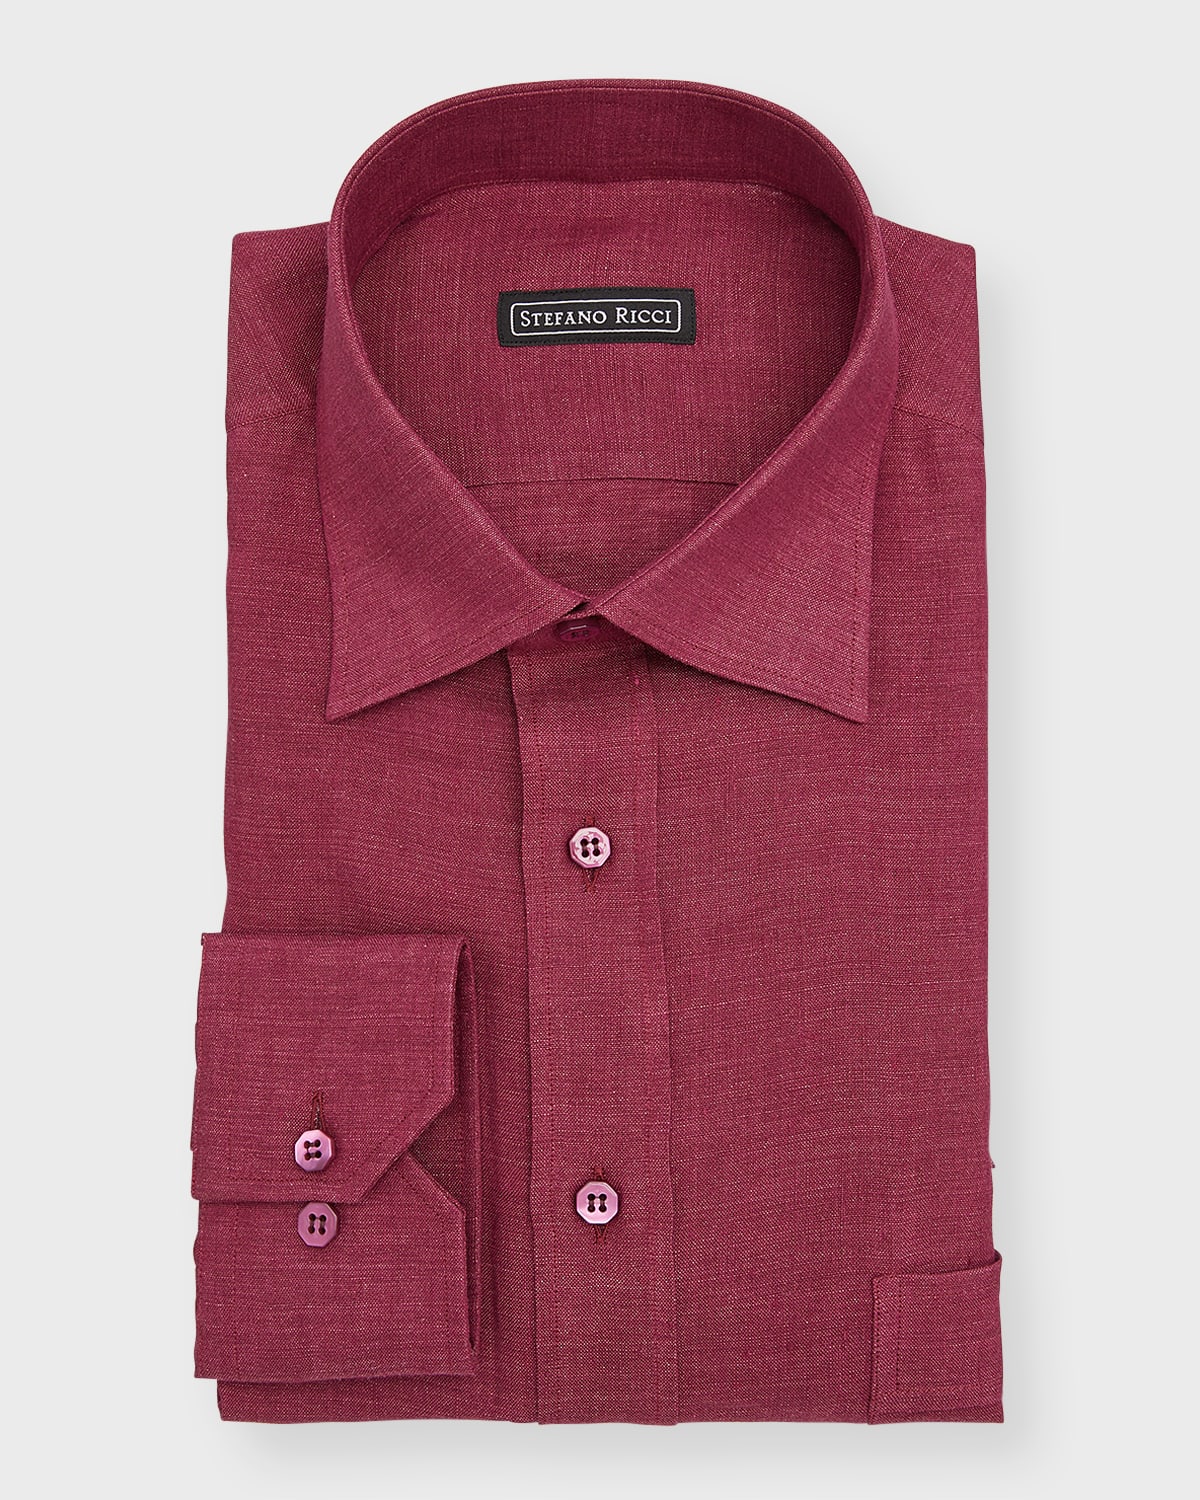 Stefano Ricci Men's Linen Dress Shirt In Dark Red